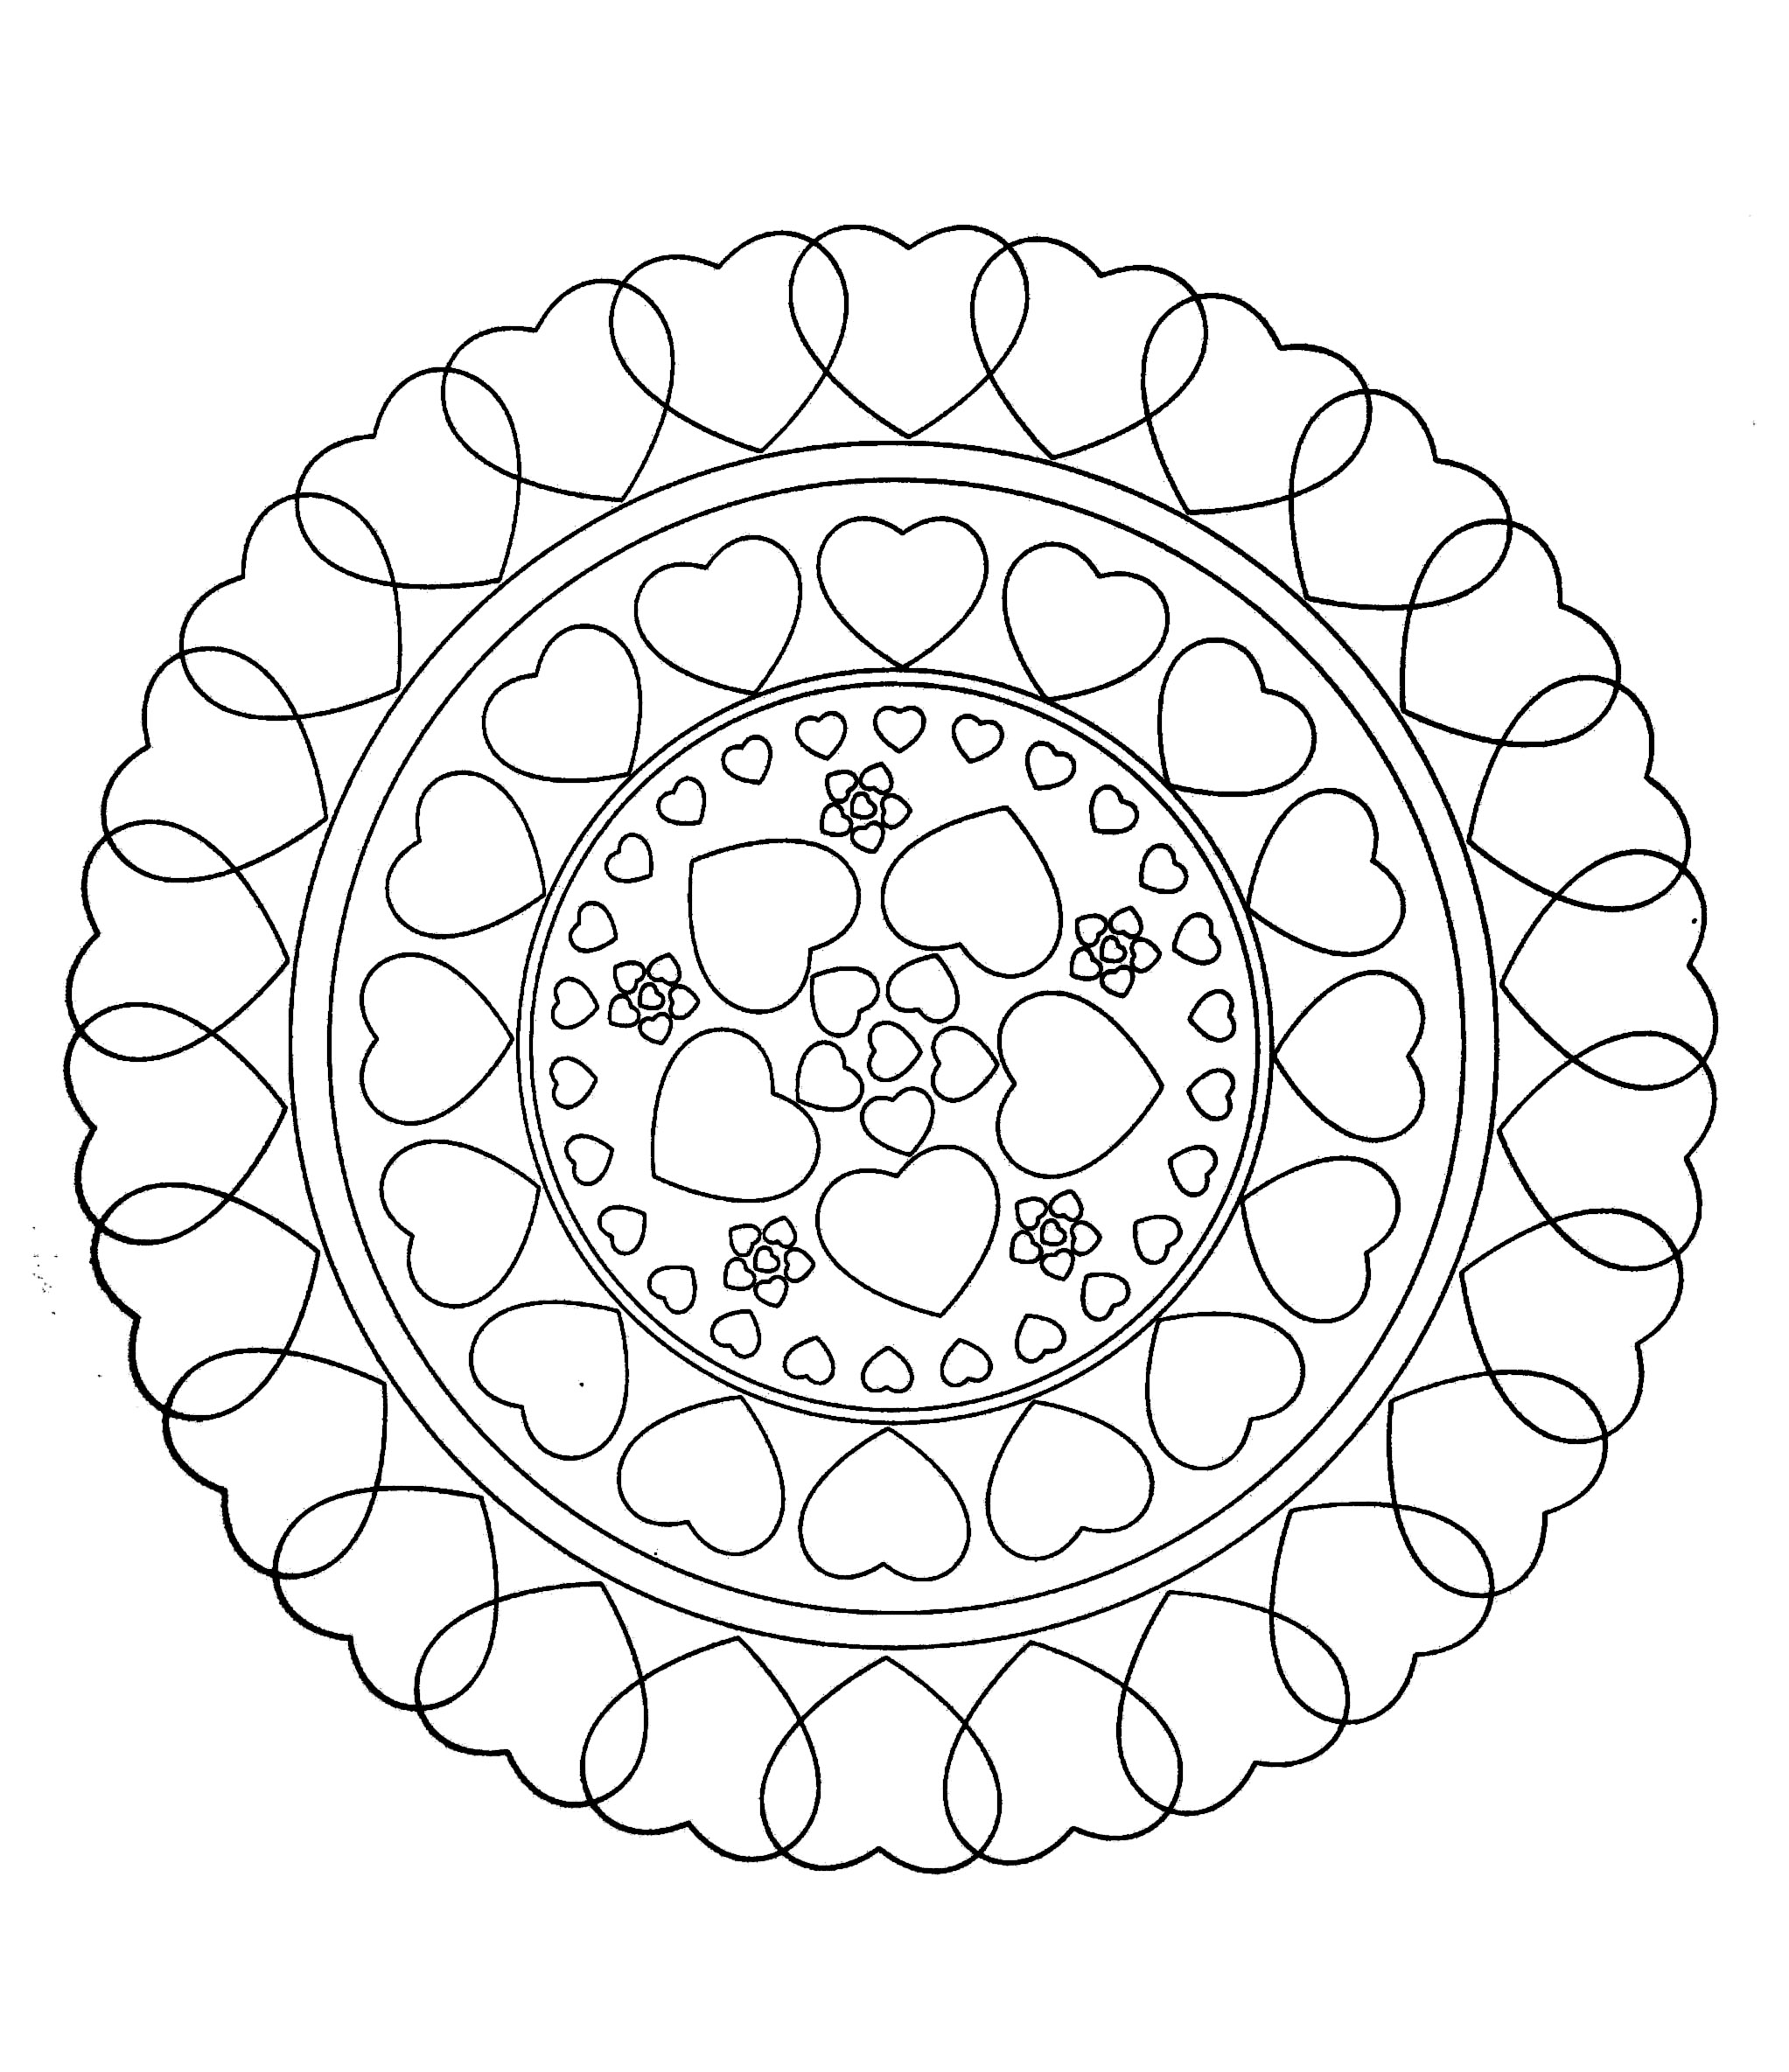 Mandala a colorier zen relax gratuit - 26 - Image avec : Coeur